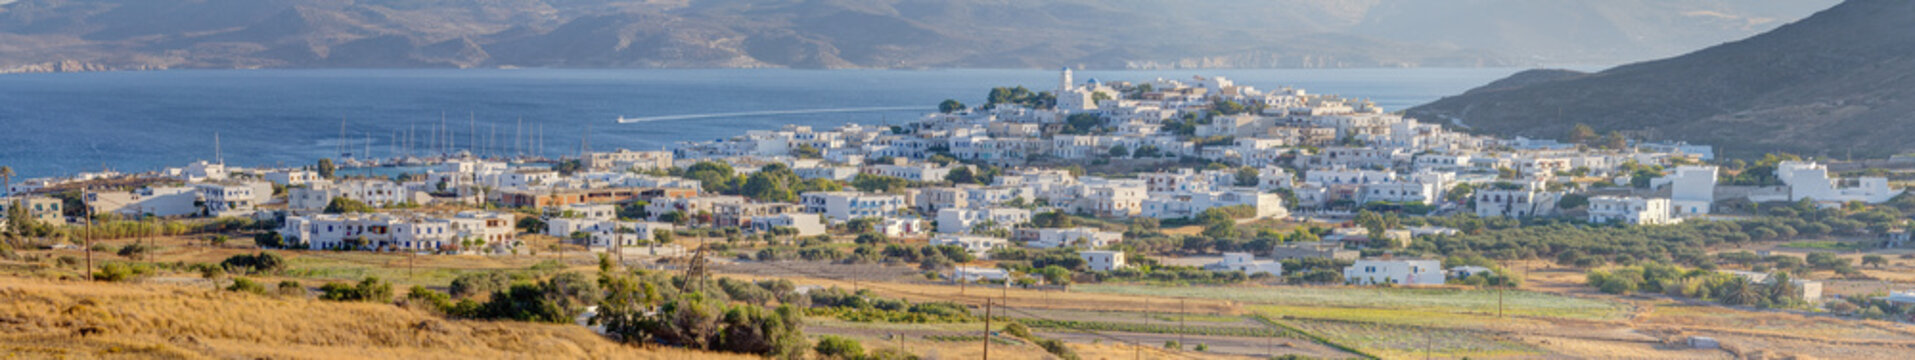 Panorama of Adamantas, Milos island, Cyclades, Greece